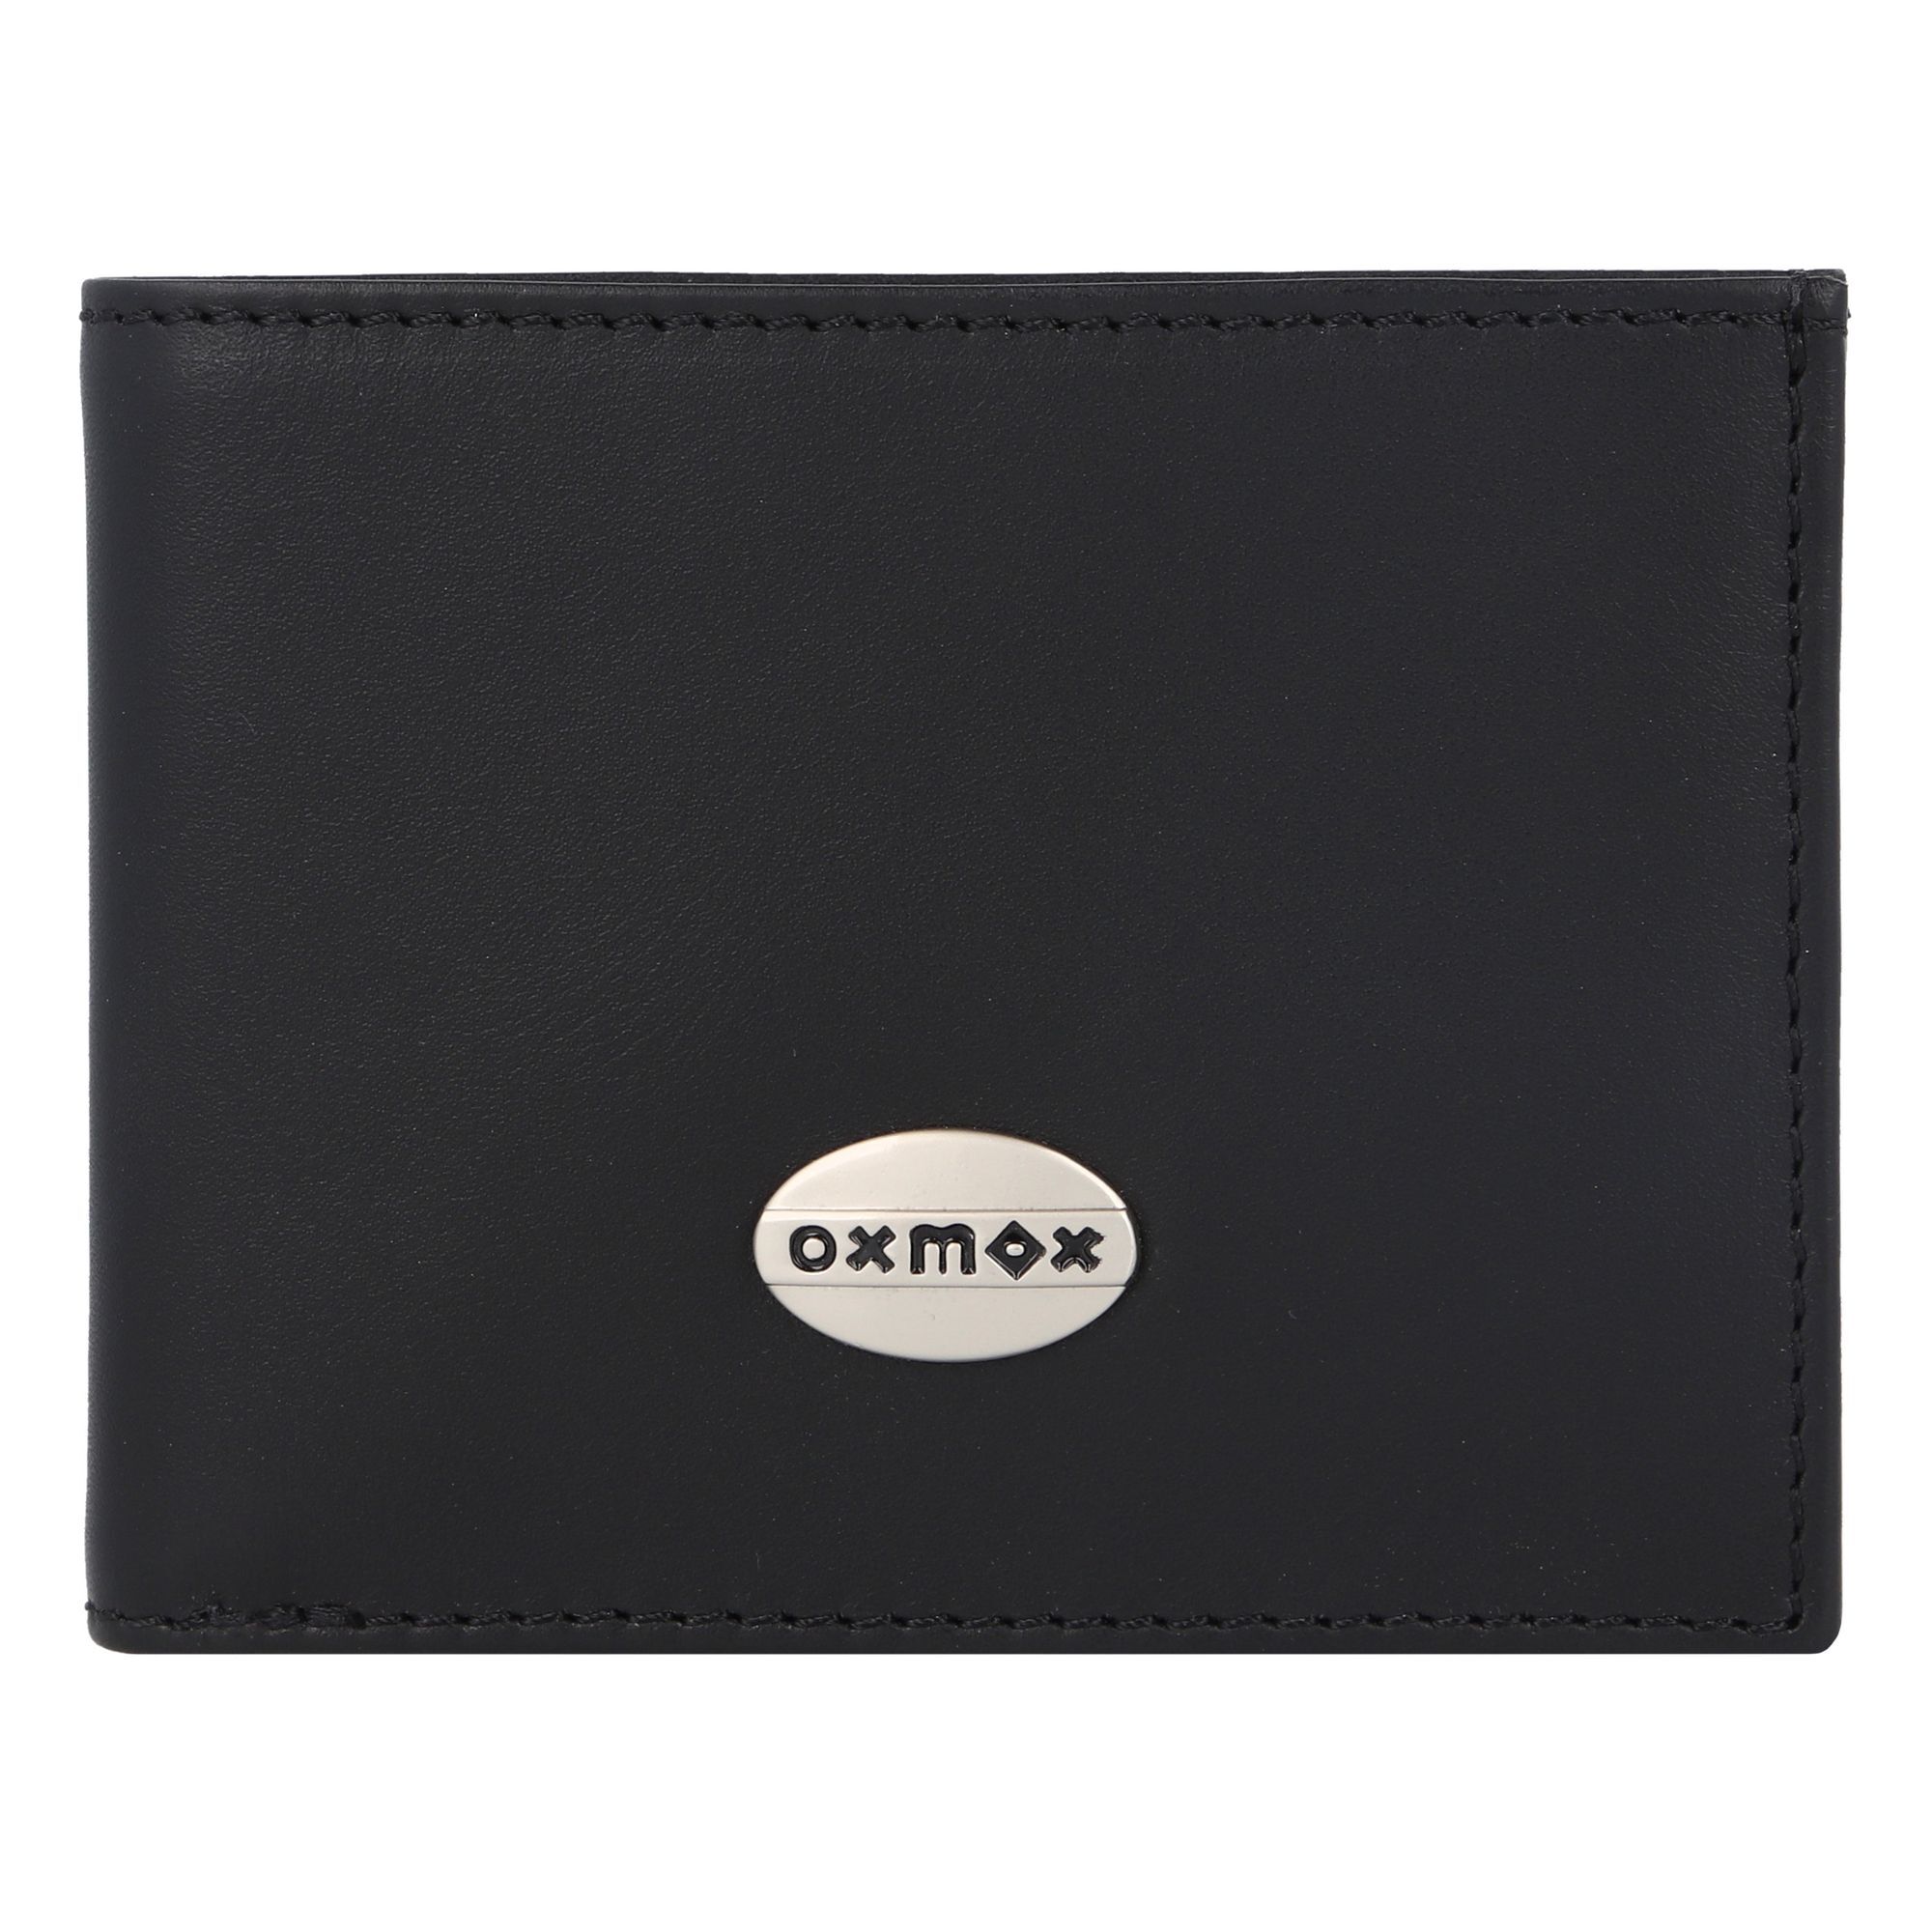 Кошелек oxmox Leather RFID Schutz Leder 10.5 см, черный